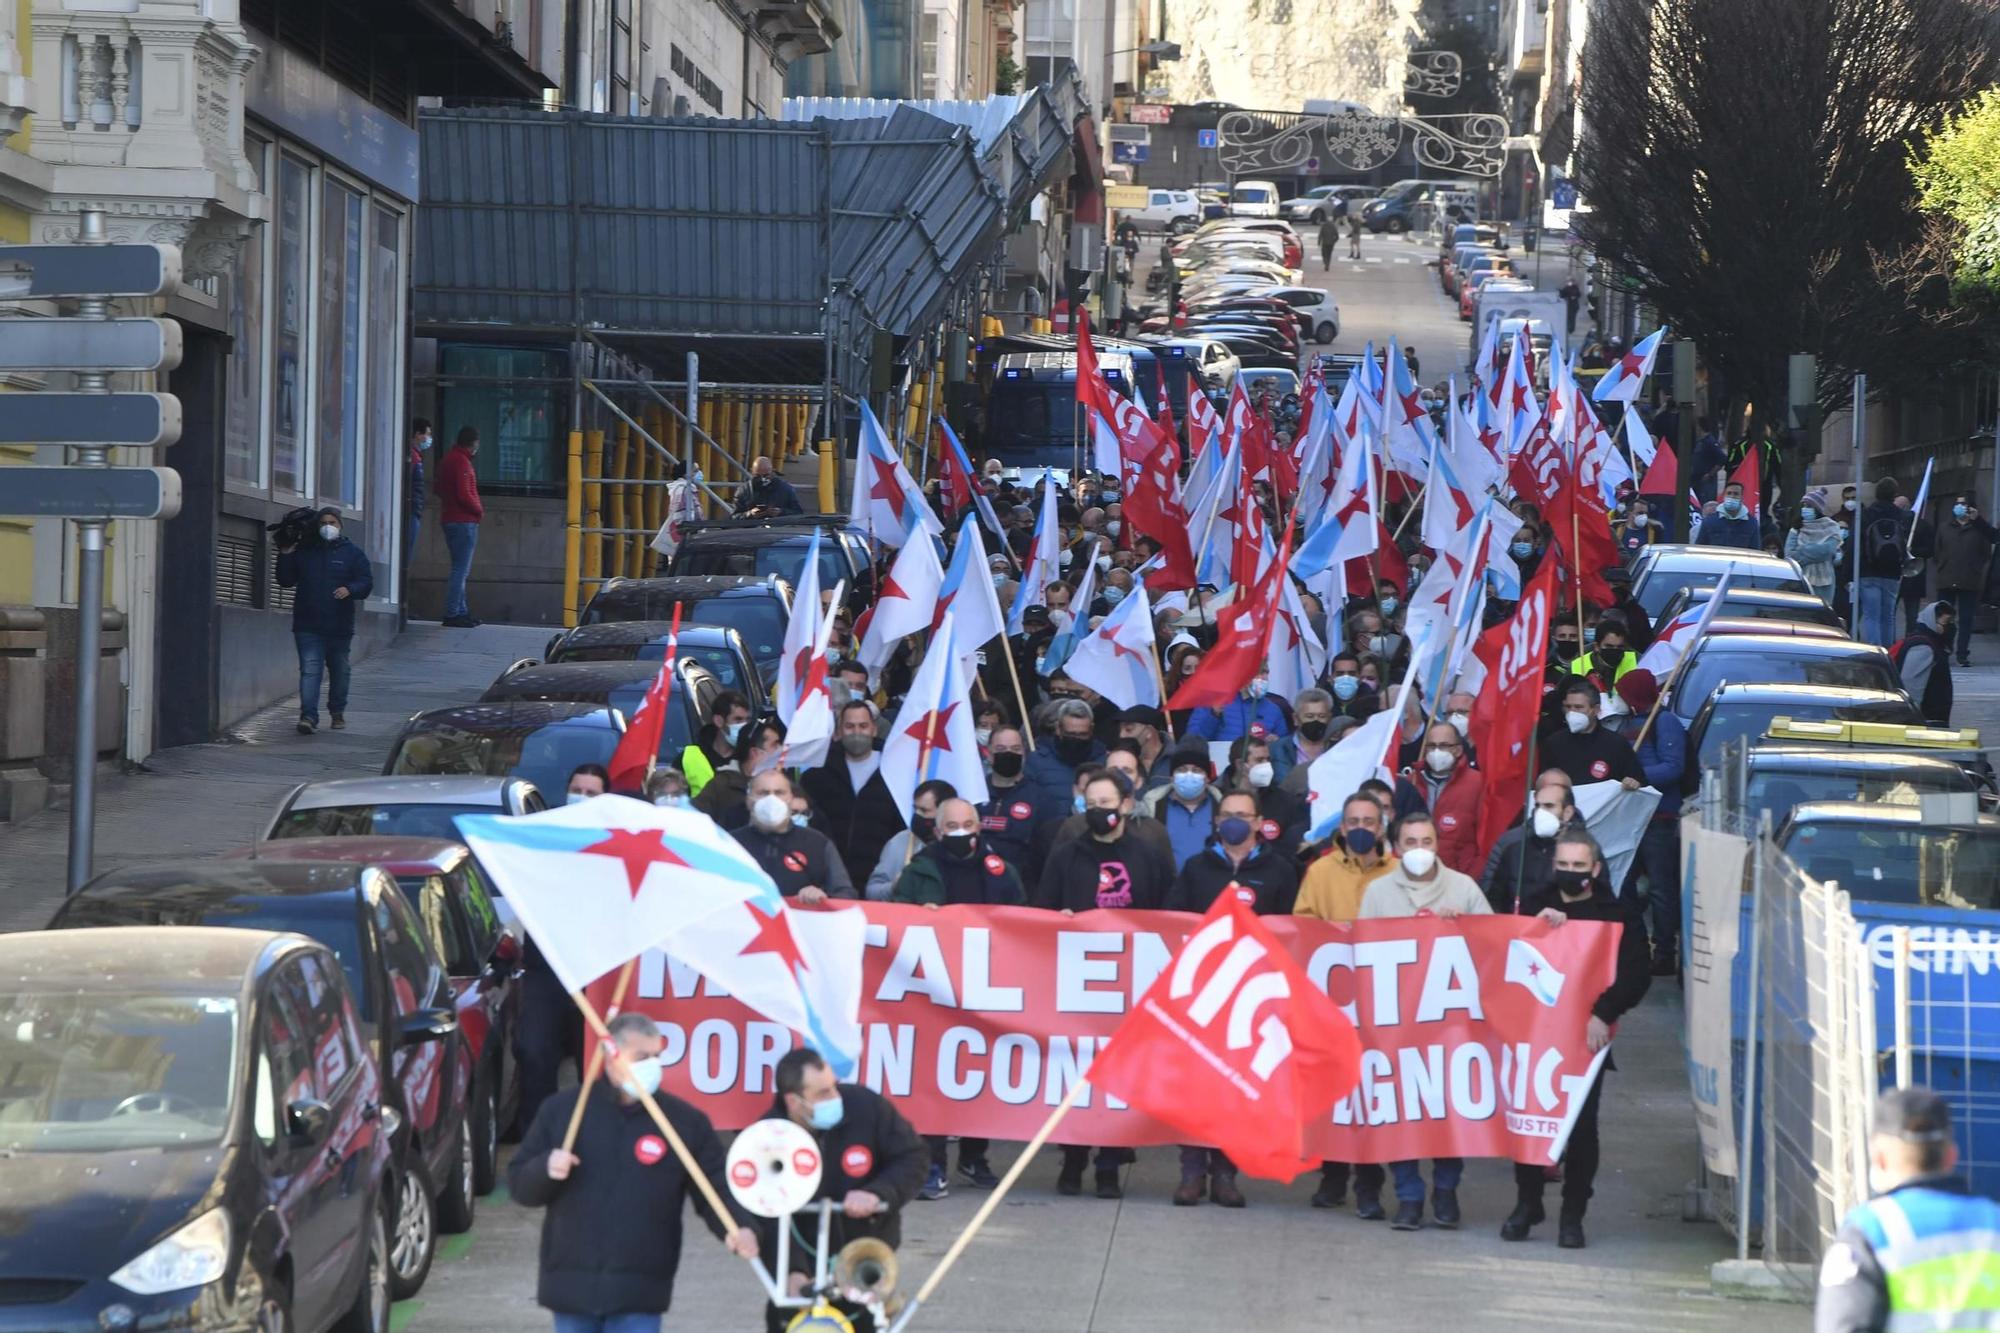 Los trabajadores del metal se manifiestan en A Coruña por un convenio laboral "digno", "secuestrado" por la patronal